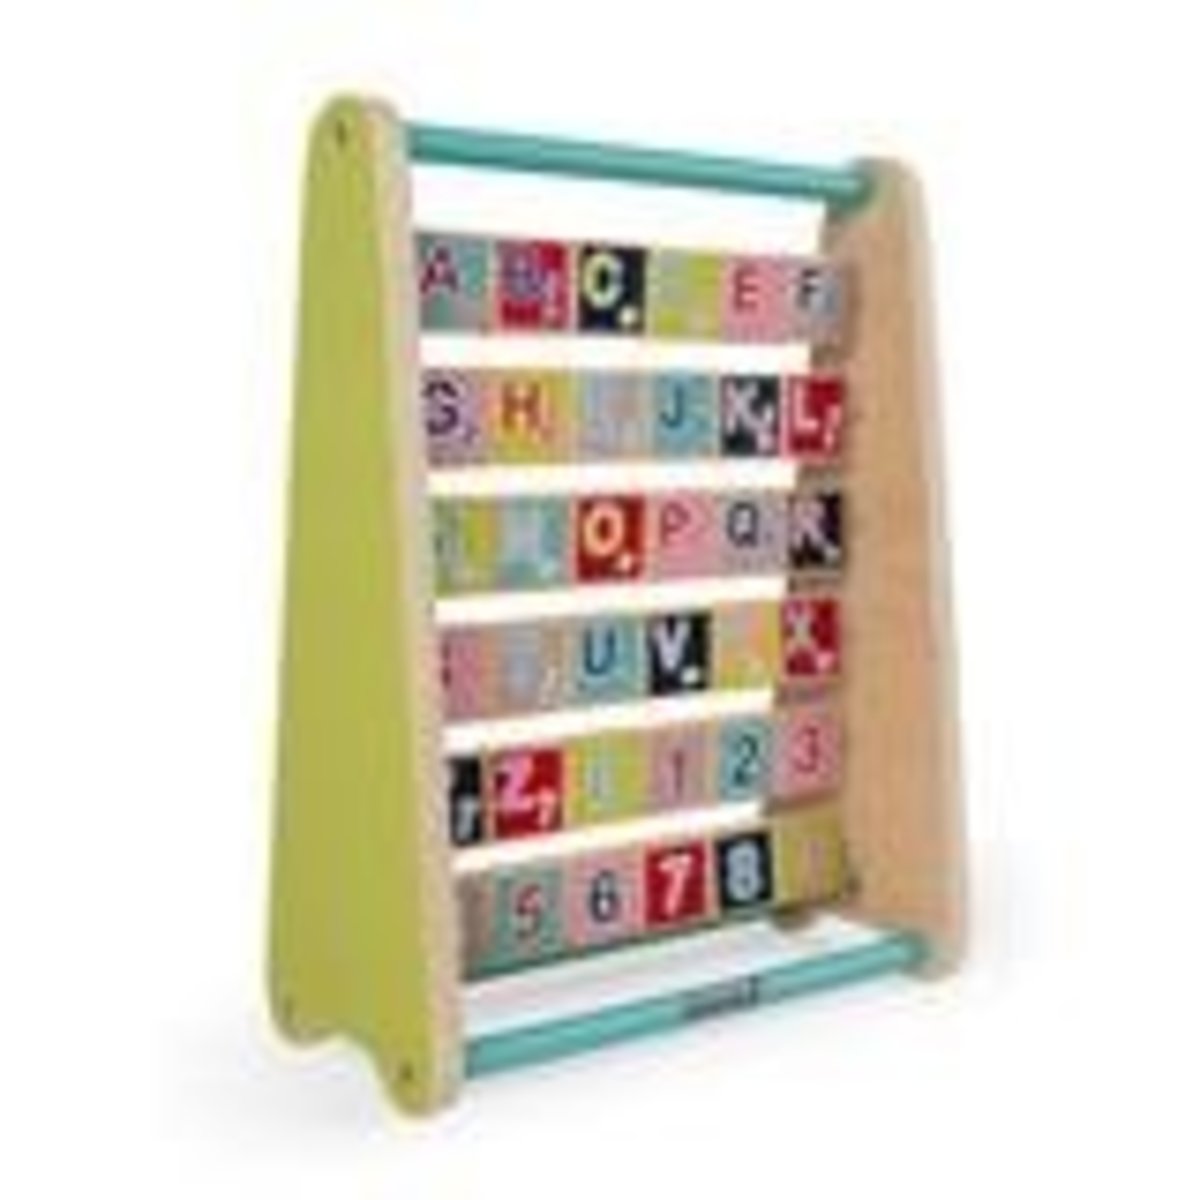 b toys alphabet abacus